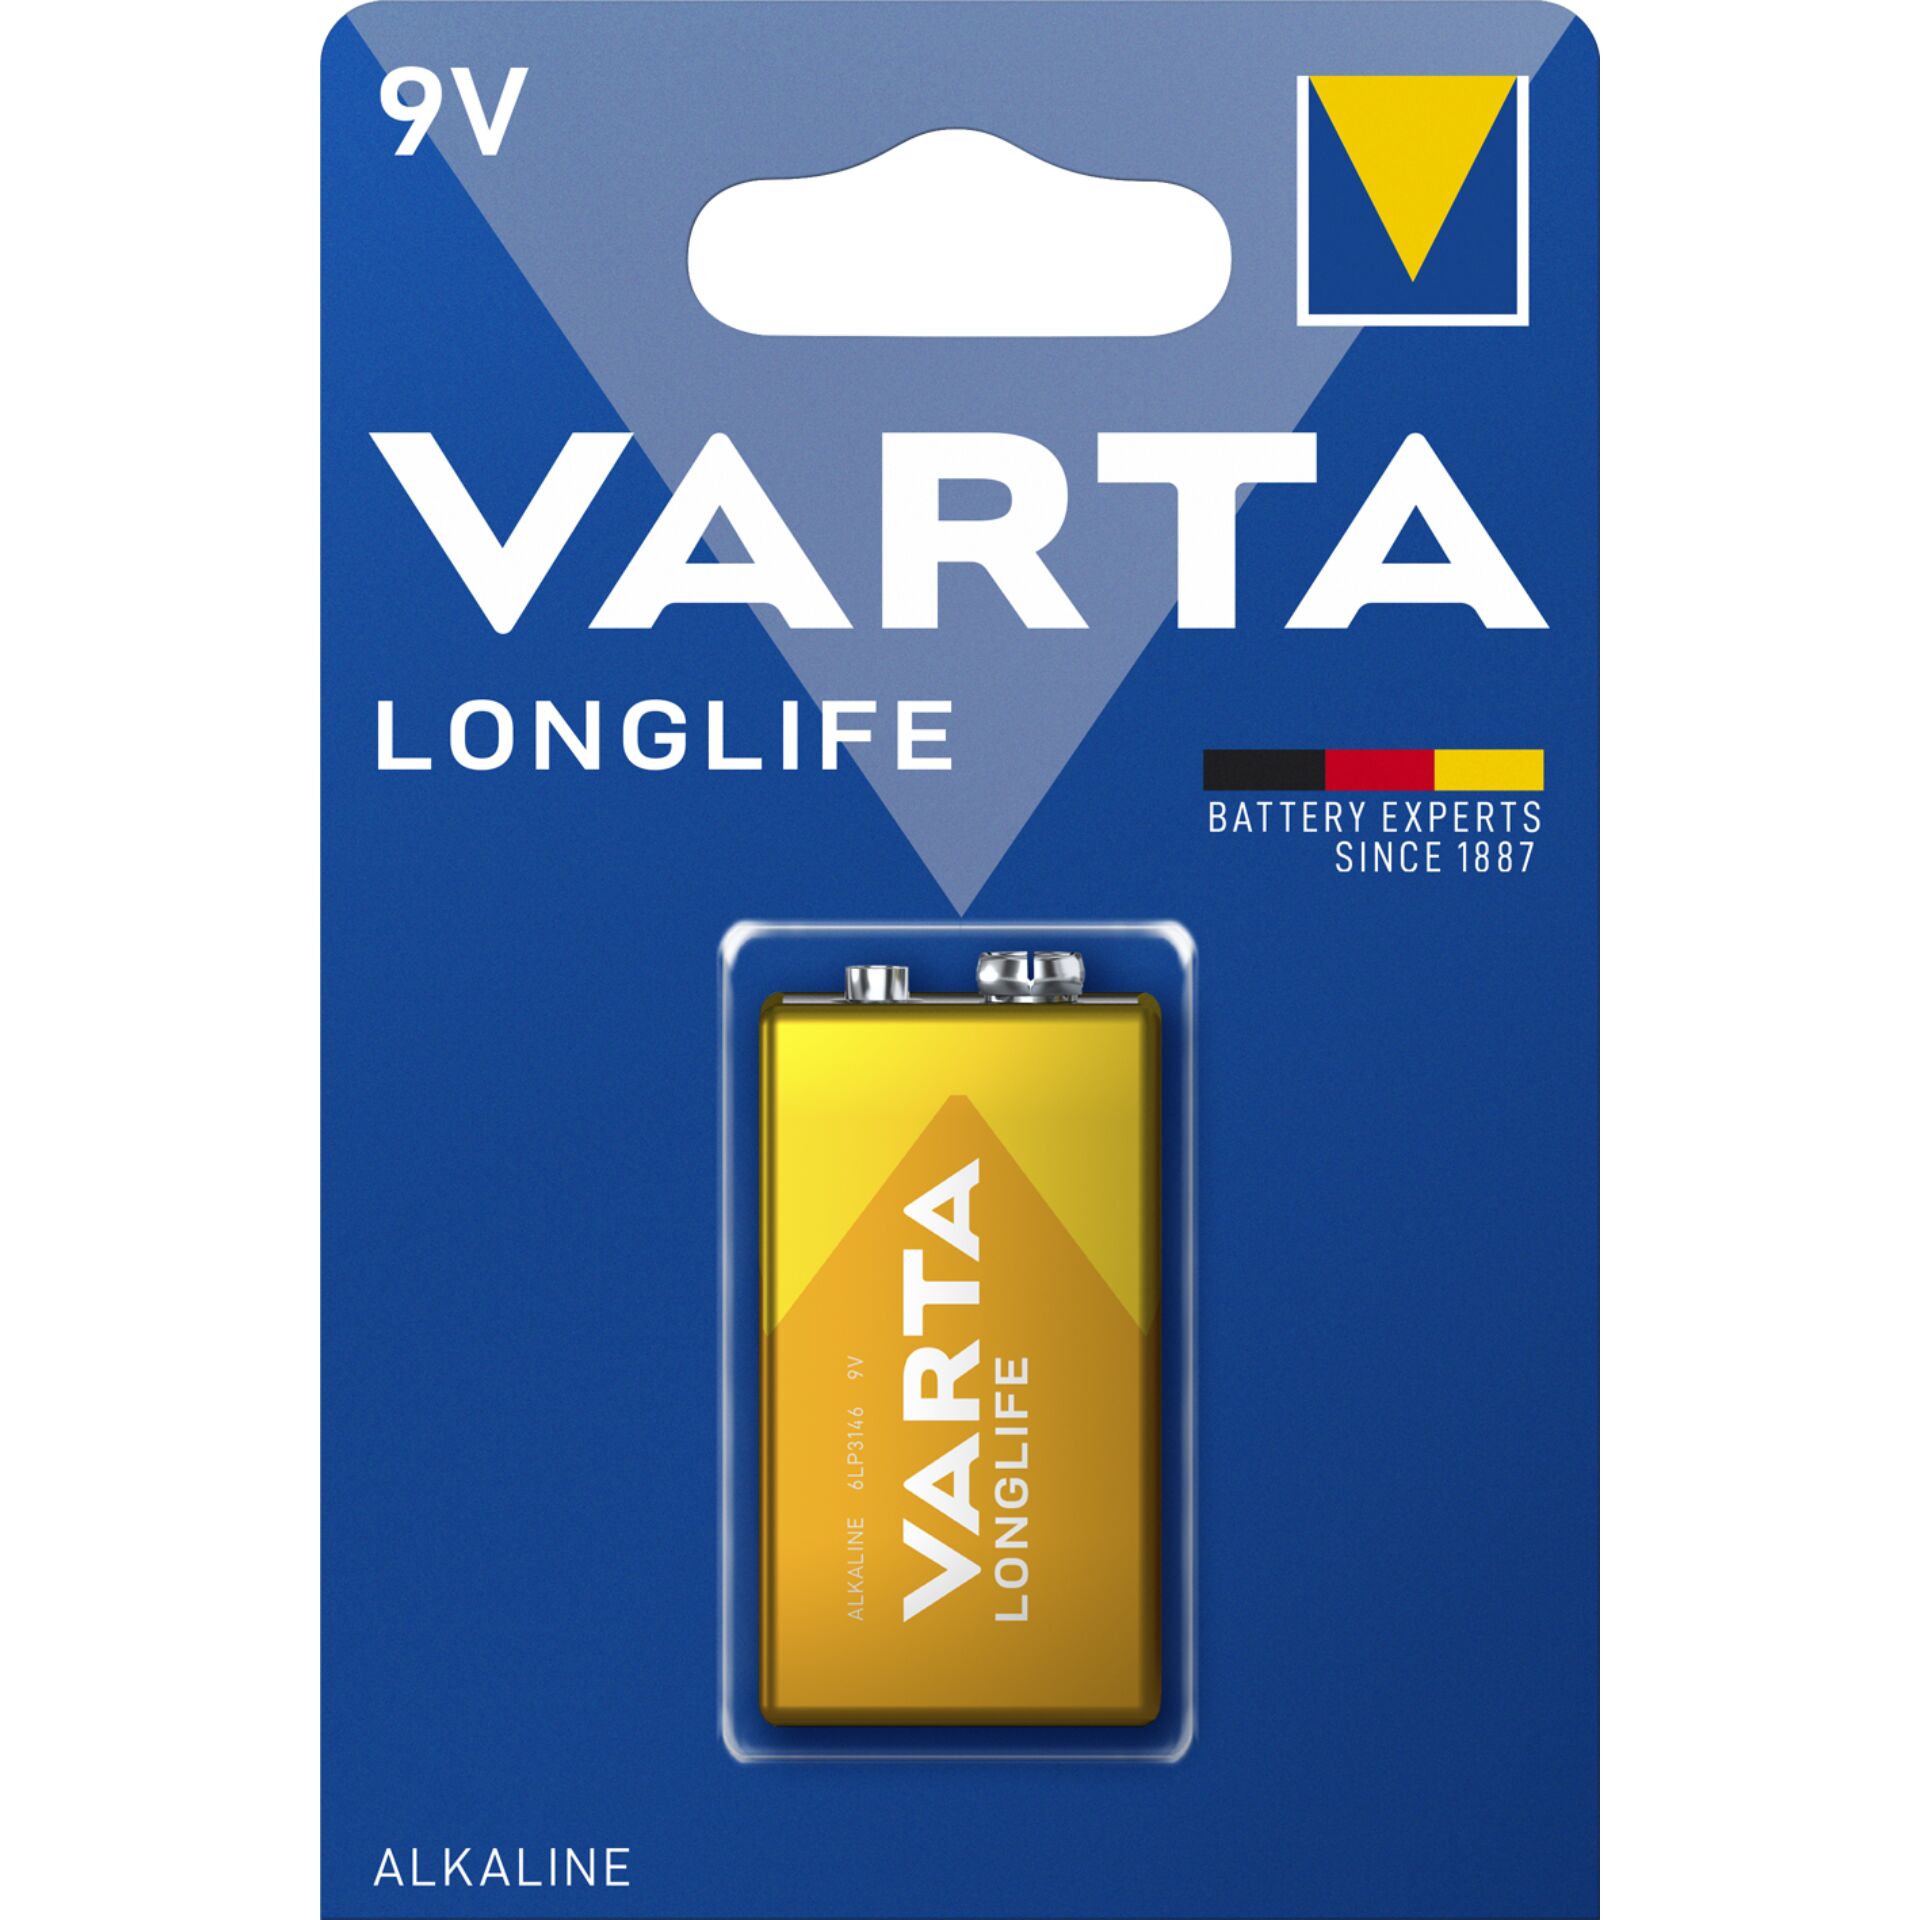 Varta Longlife Extra 9V, Alkali 